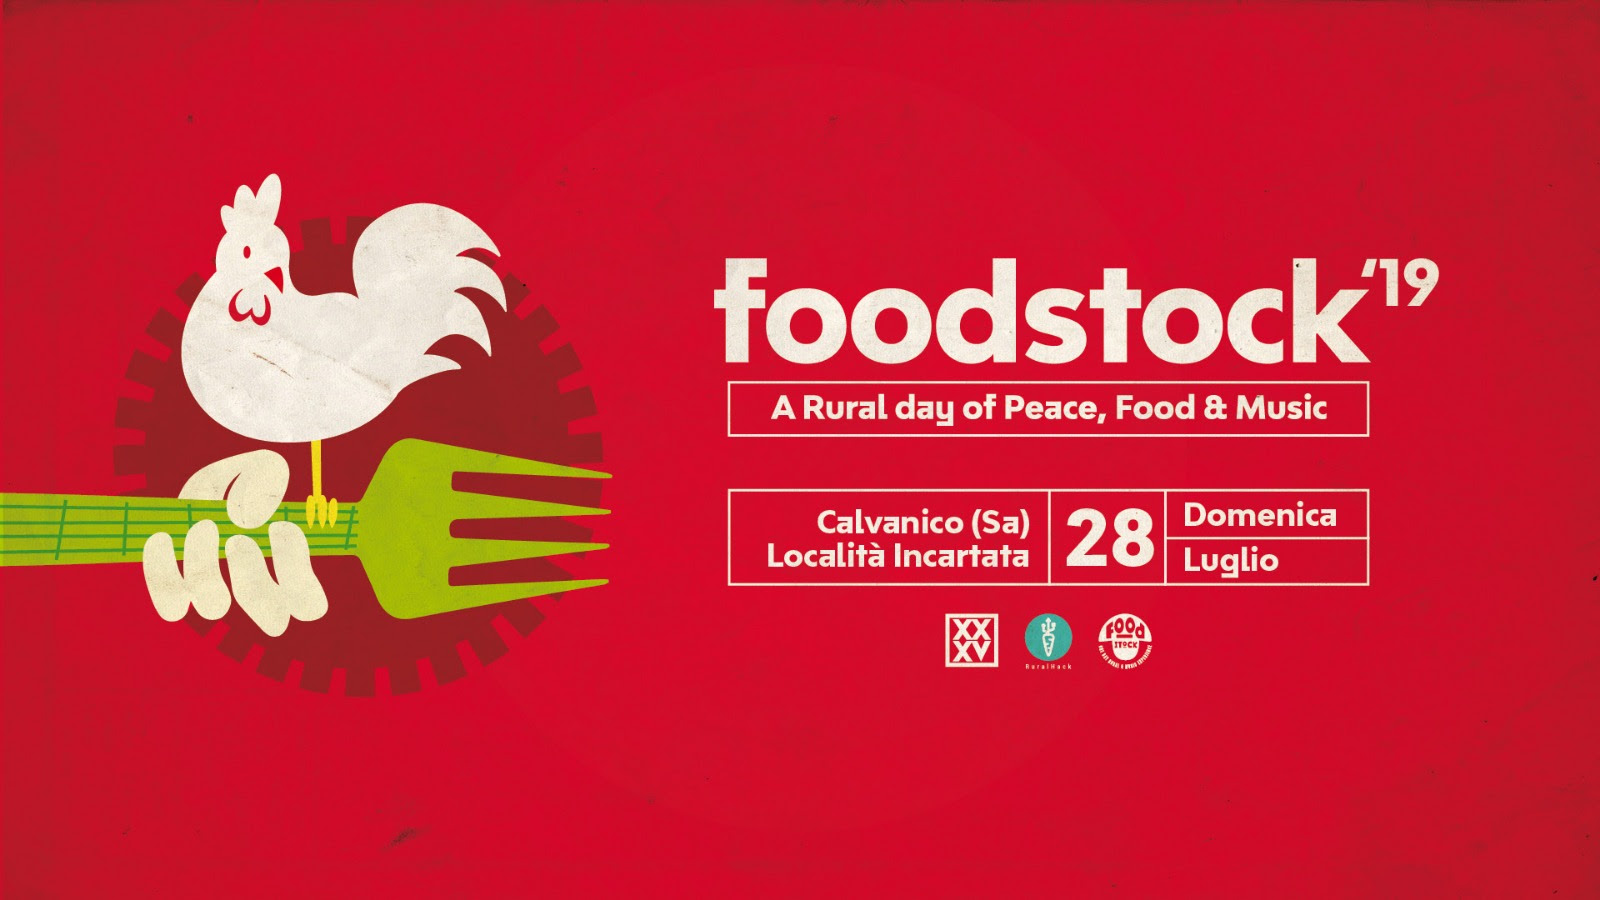 Foodstock 2019 celebra i cinquant’anni di Woodstock. Cibo italiano di qualità e tanta musica live